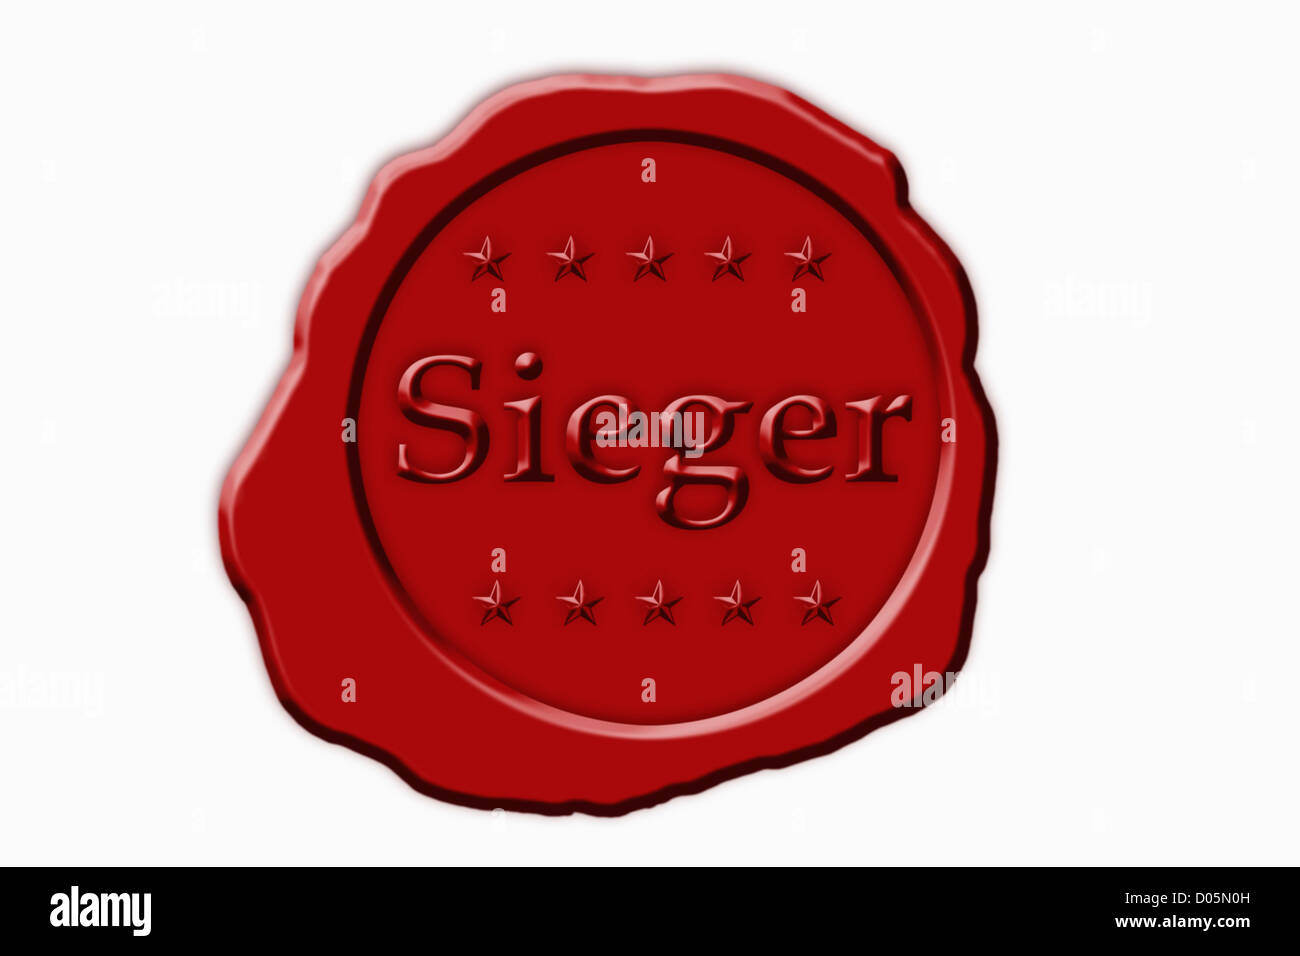 Detailansicht Eines Roten Siegel Mit der Aufschrift Sieger | Detail-Foto einer roten Dichtung mit dem deutschen Inschrift Sieger Stockfoto